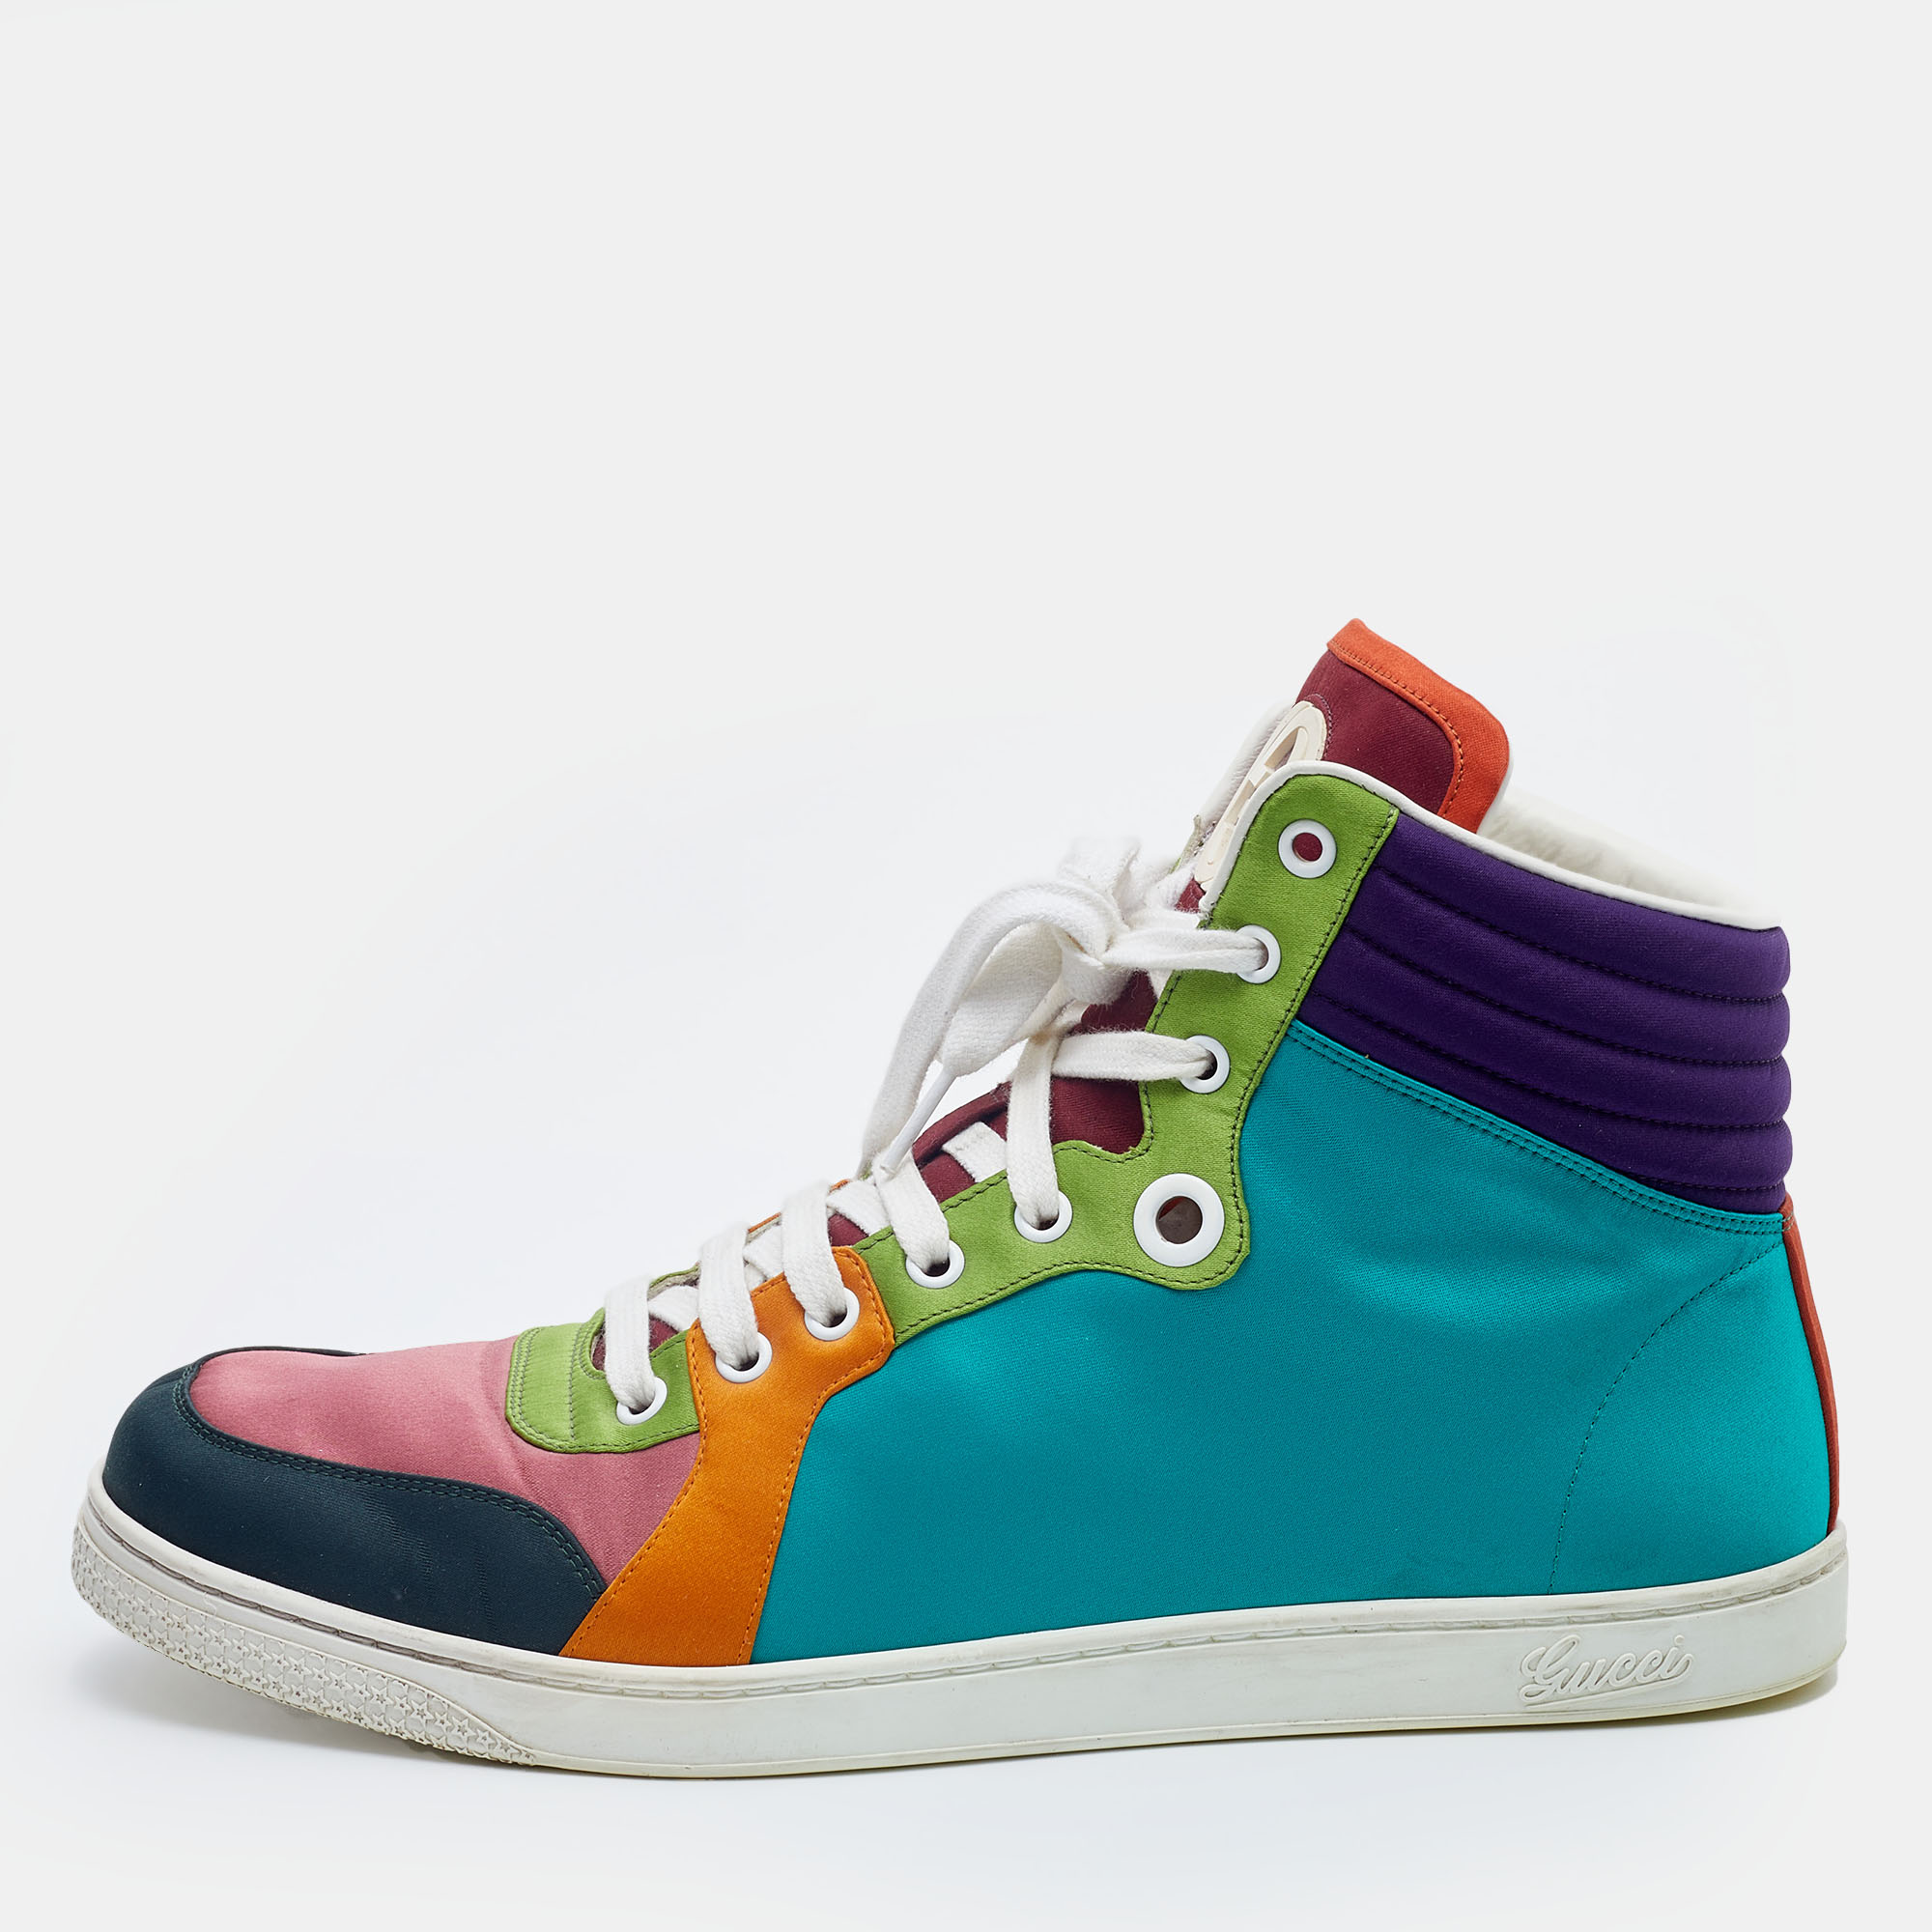 Gucci multicolor satin coda high top sneakers size 43